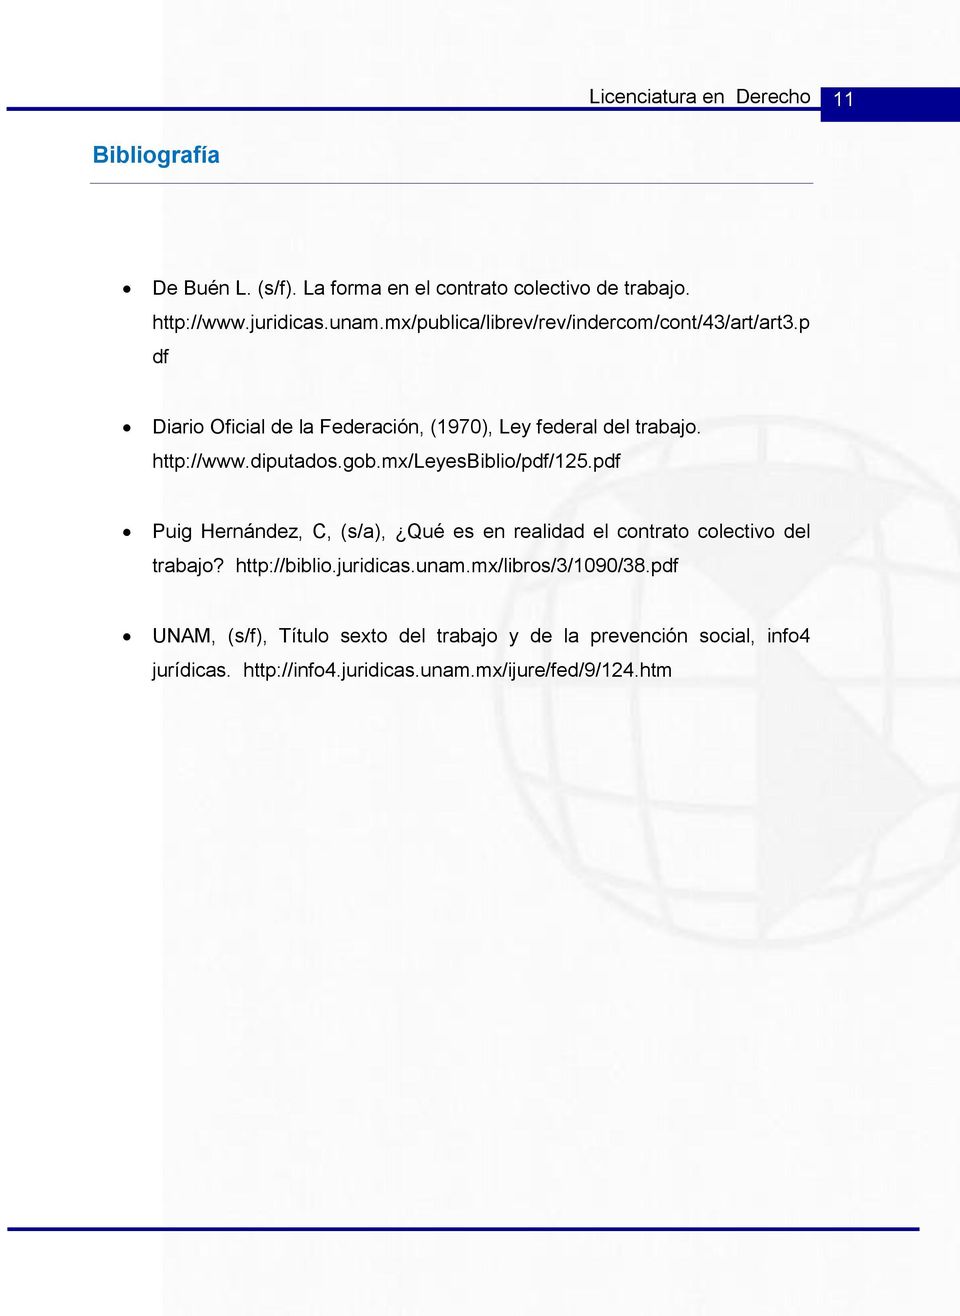 gob.mx/leyesbiblio/pdf/125.pdf Puig Hernández, C, (s/a), Qué es en realidad el contrato colectivo del trabajo? http://biblio.juridicas.unam.